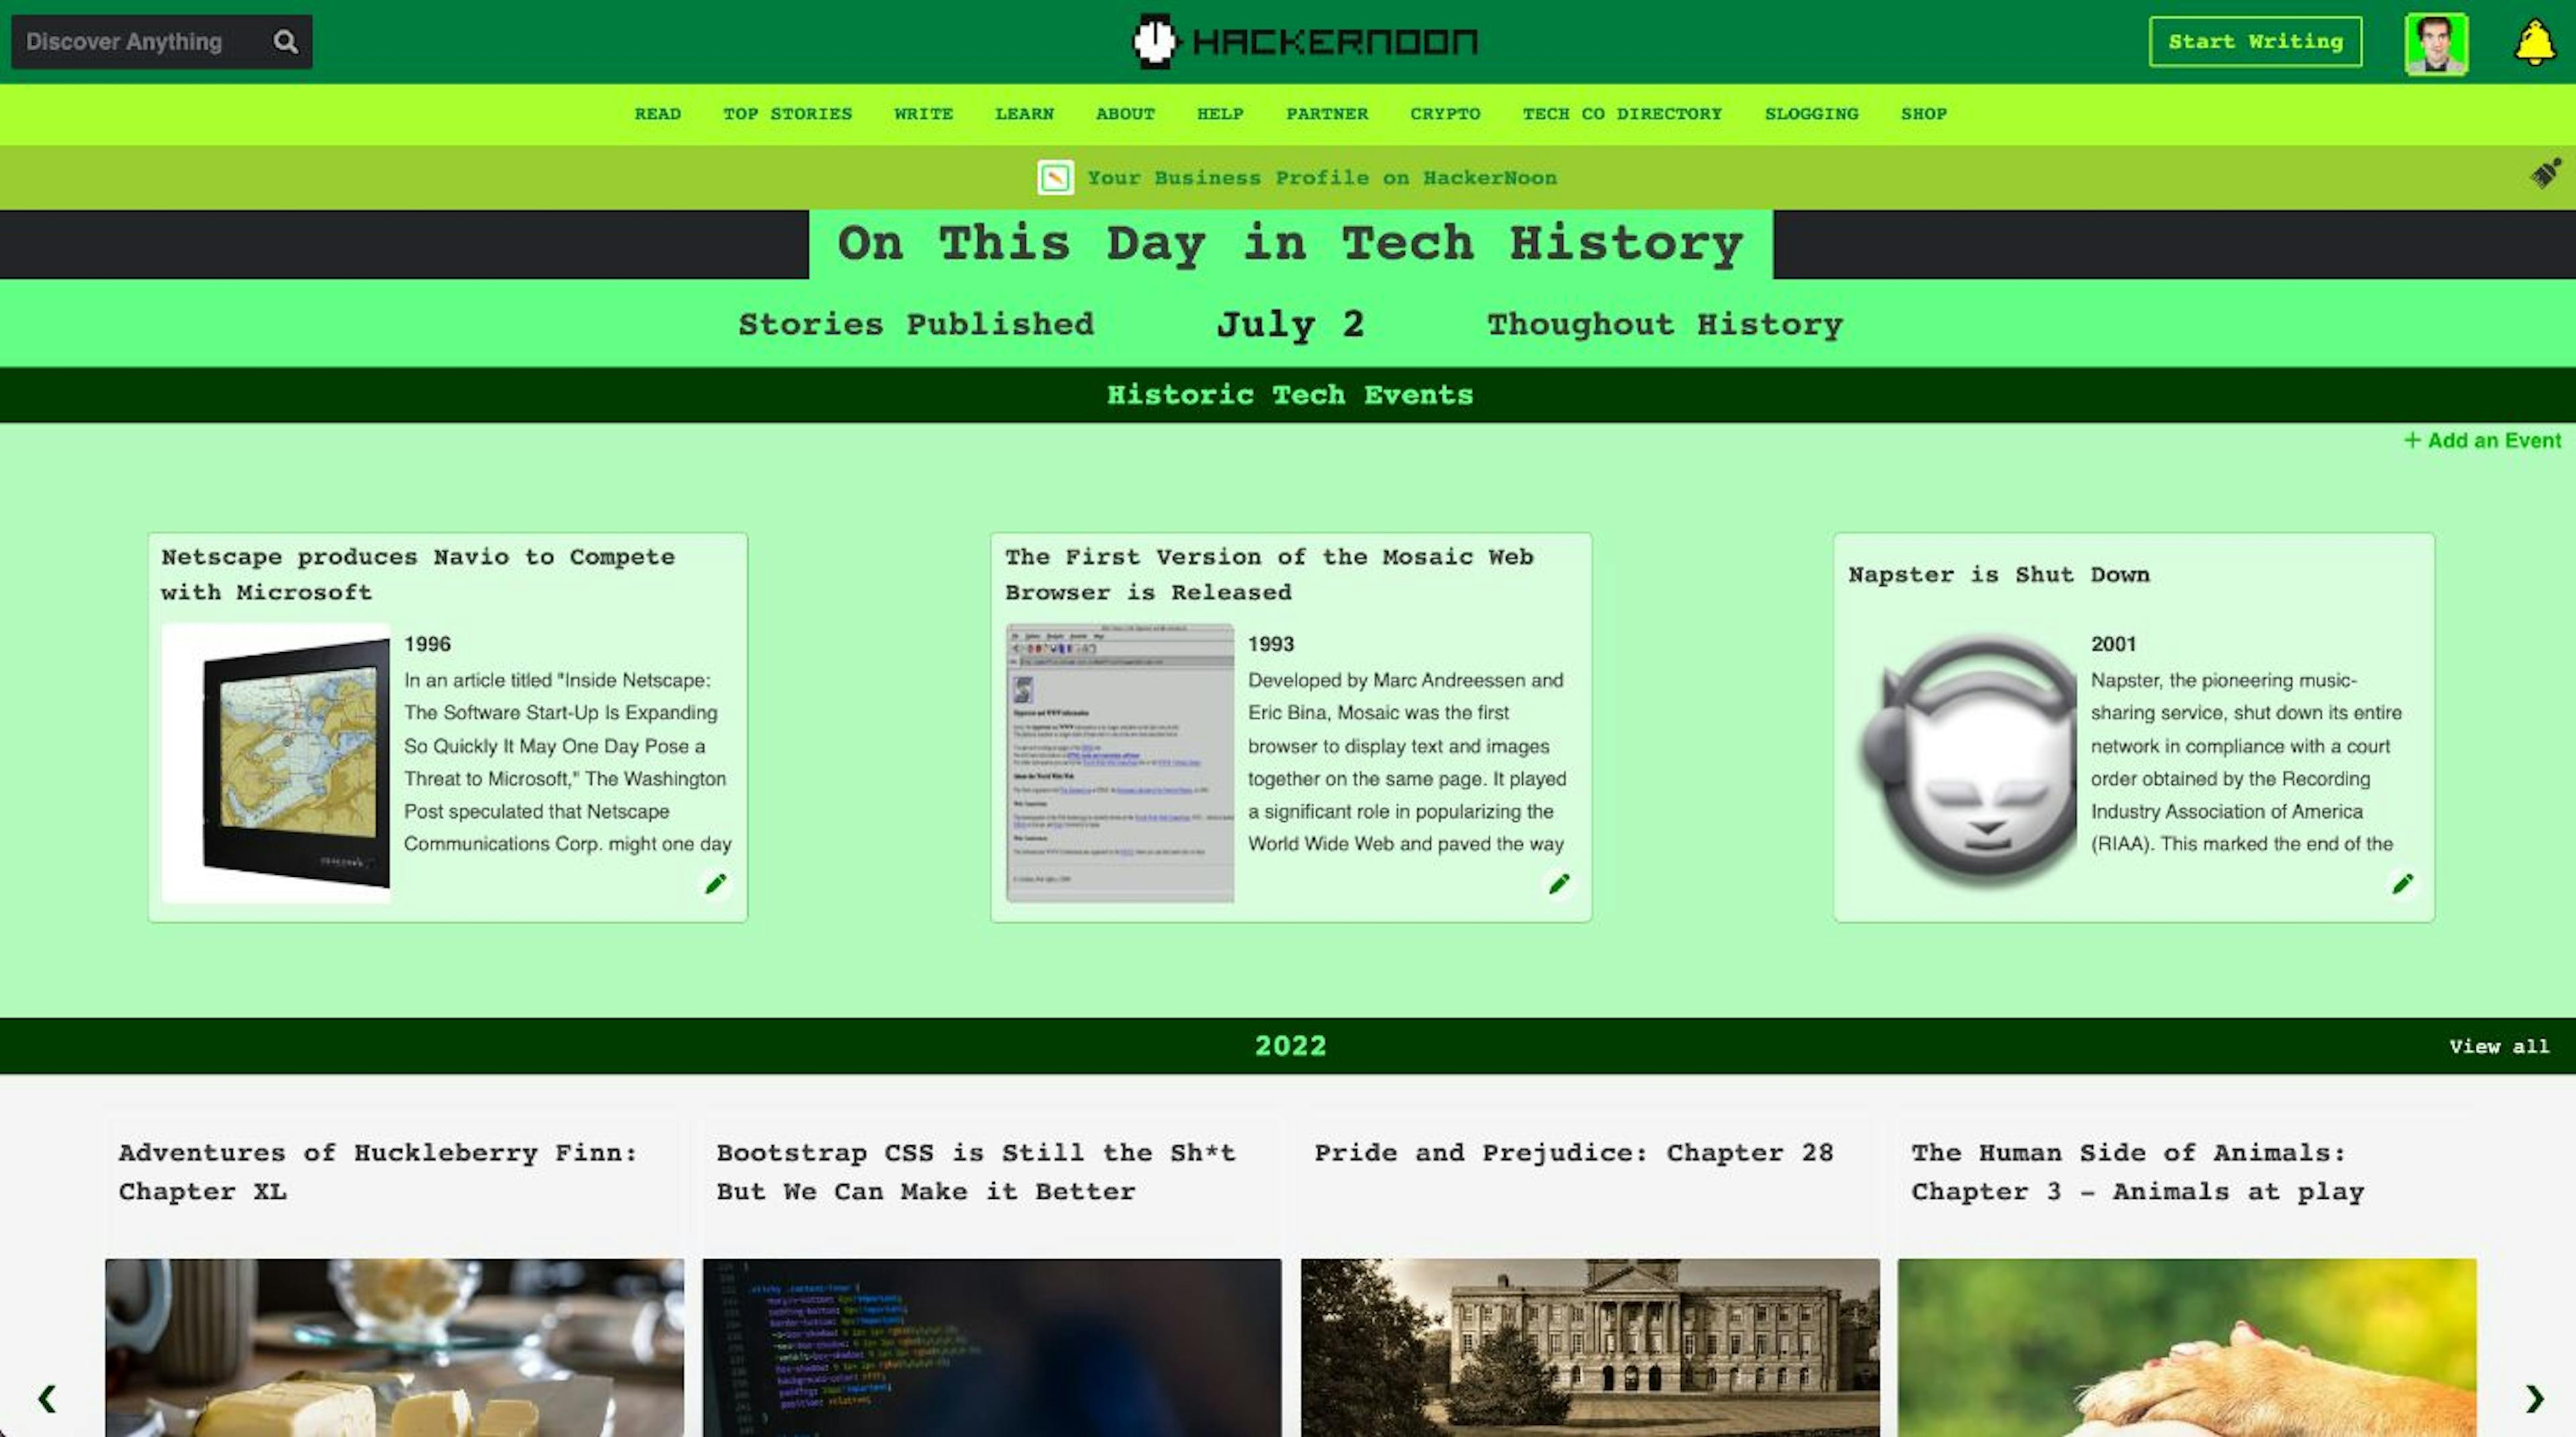 featured image - Vào ngày này trong lịch sử công nghệ